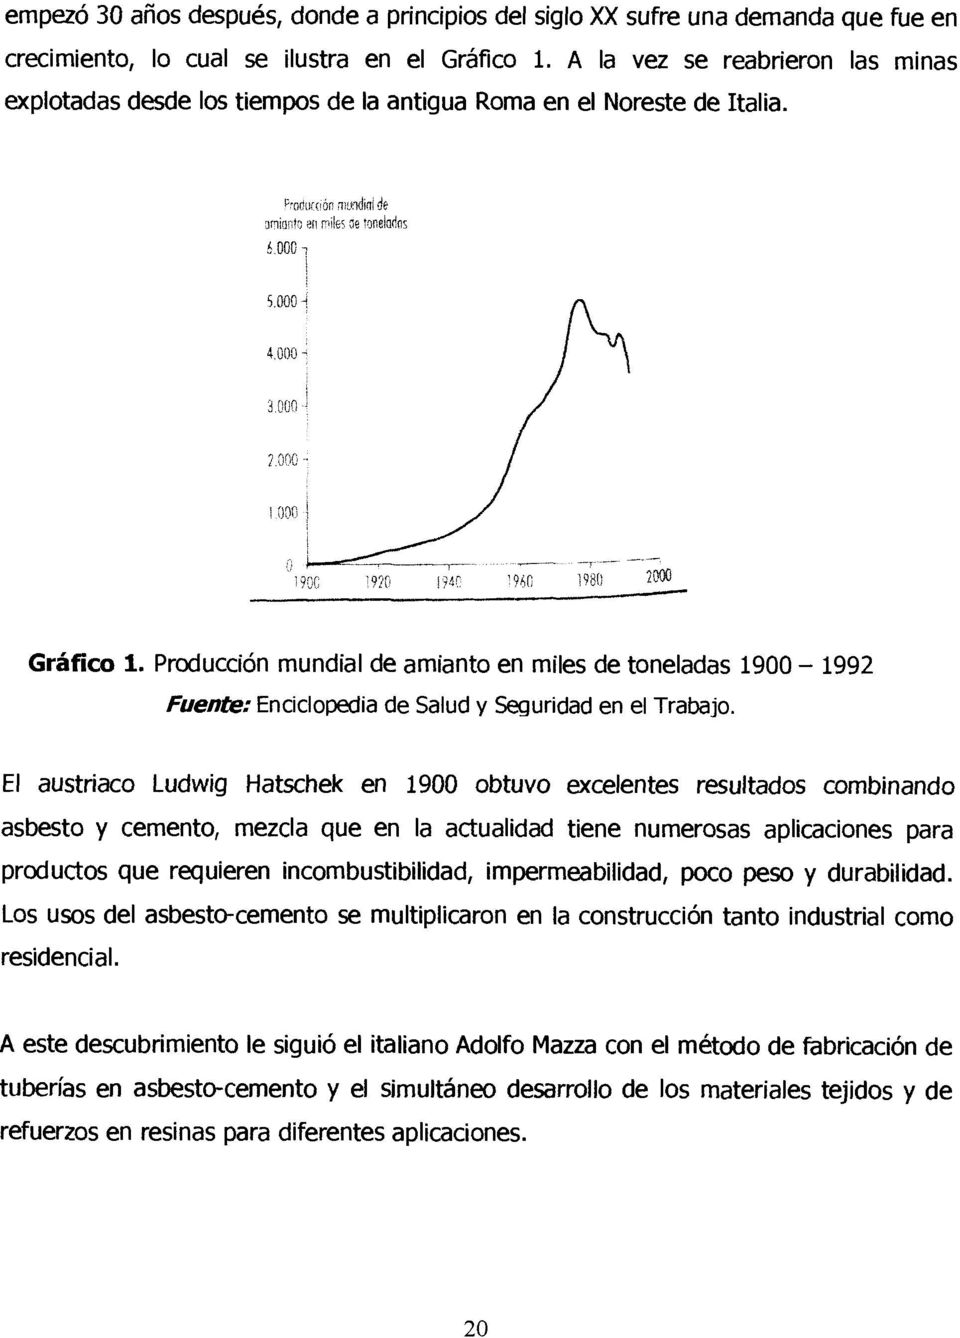 Producción mundial de amianto en miles de toneladas 1900-1992 fuente: Enciclopedia de Salud y Seguridad en el Trabajo.